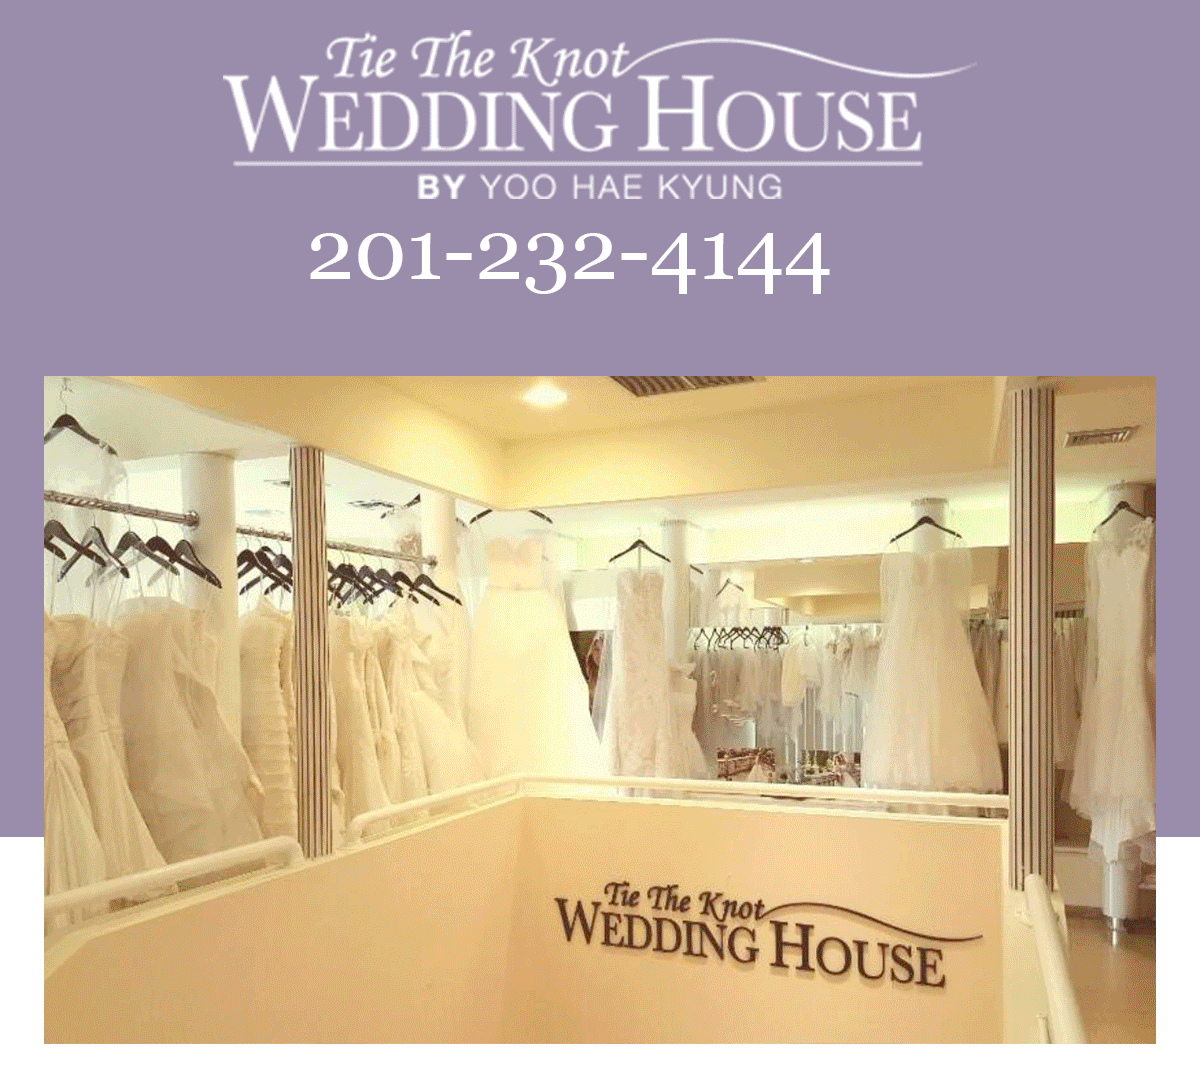 웨딩하우스,Tie The Knot Wedding House, 웨딩 드레스,턱시도,웨딩 액세서리,메이크업